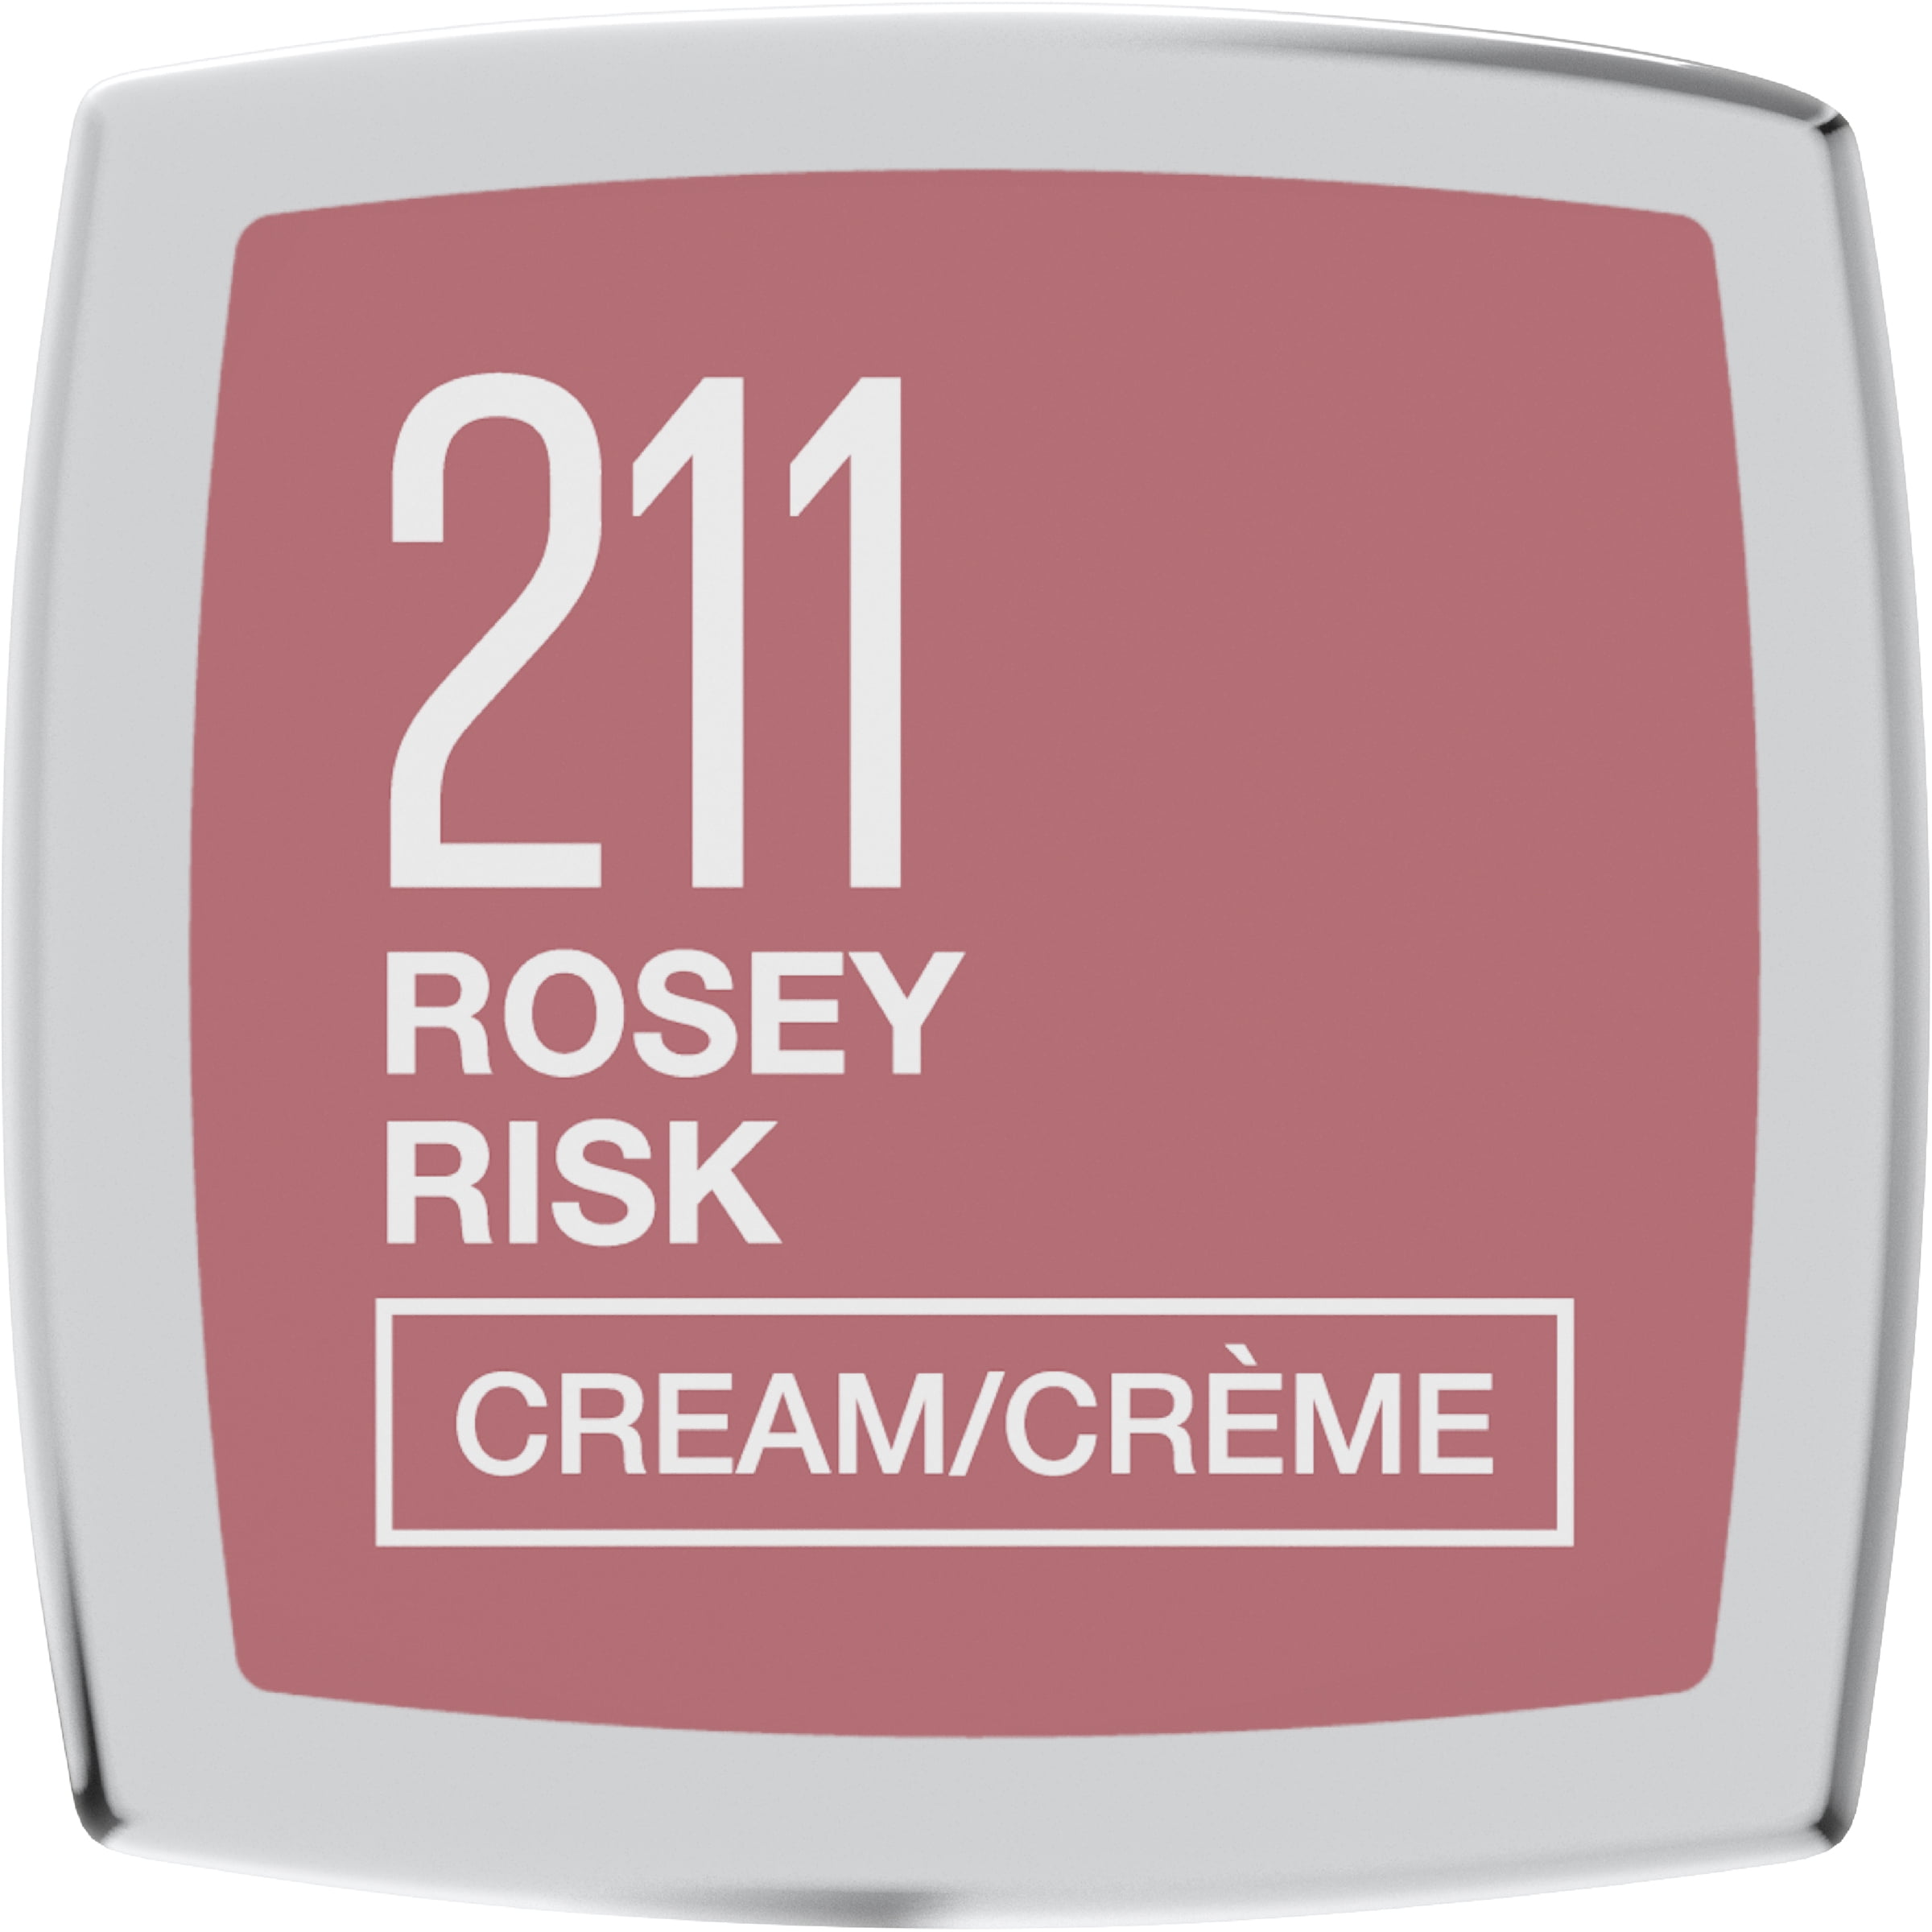 Sensational Risk Rosy Color Lipstick, Maybelline Finish Cream